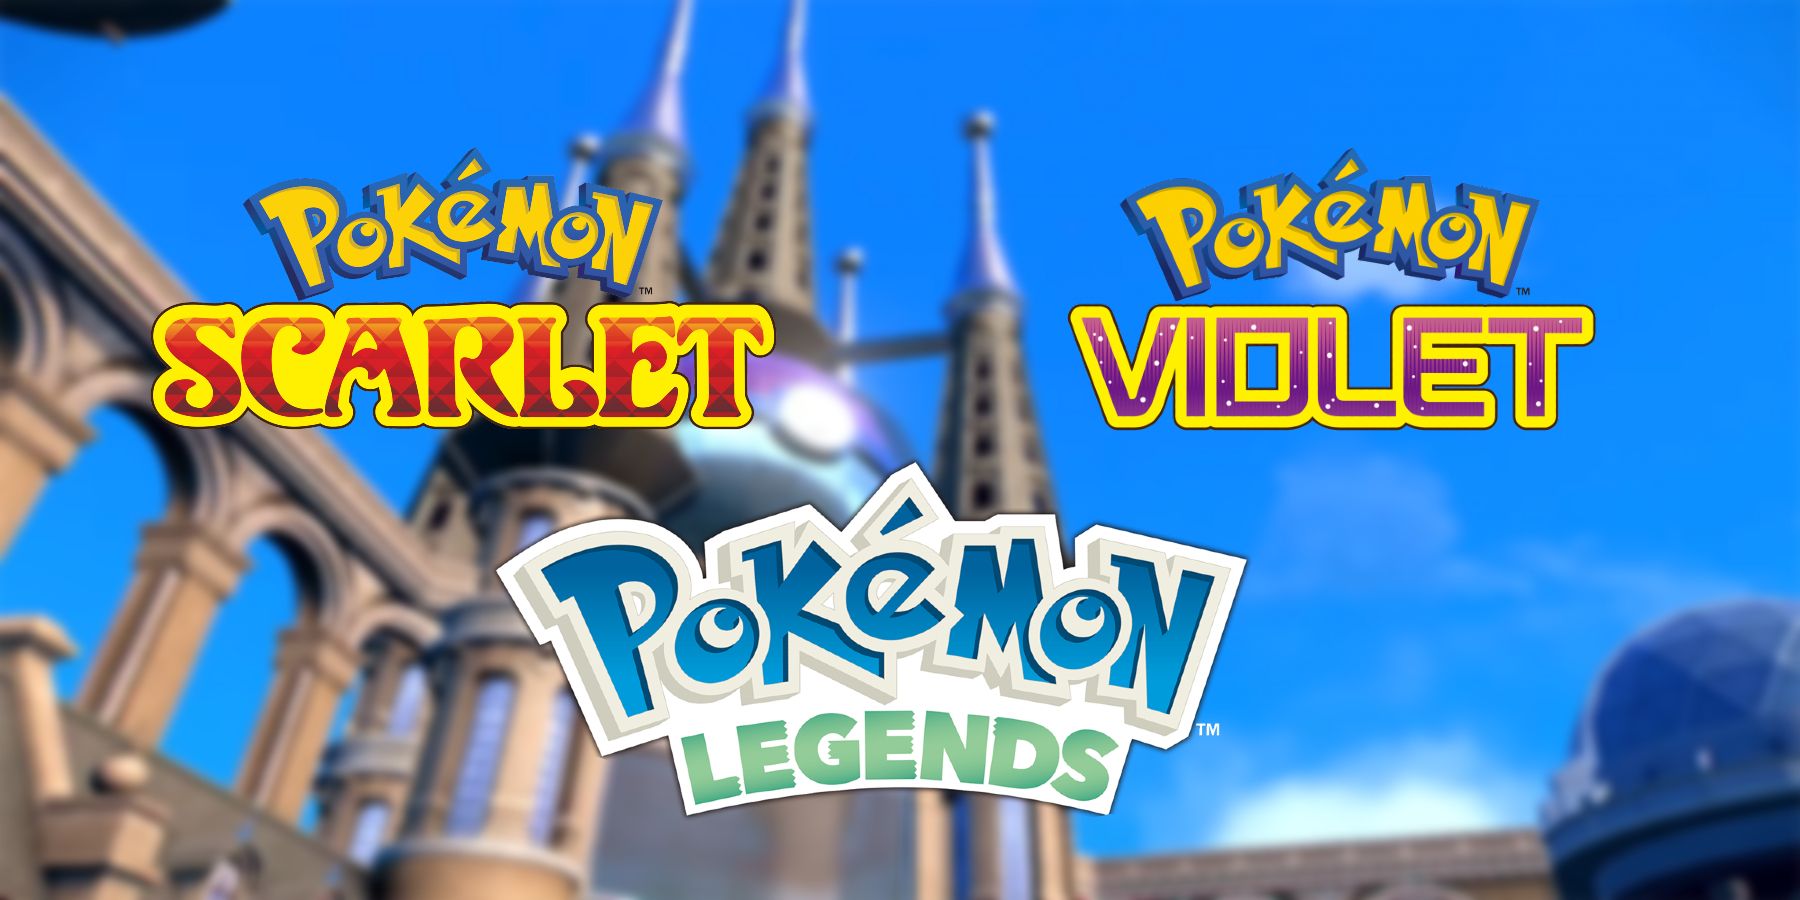 Логотипы покемонов для Скарлет, Вайолет и Легенд над зданием из Скарлет и Вайолет